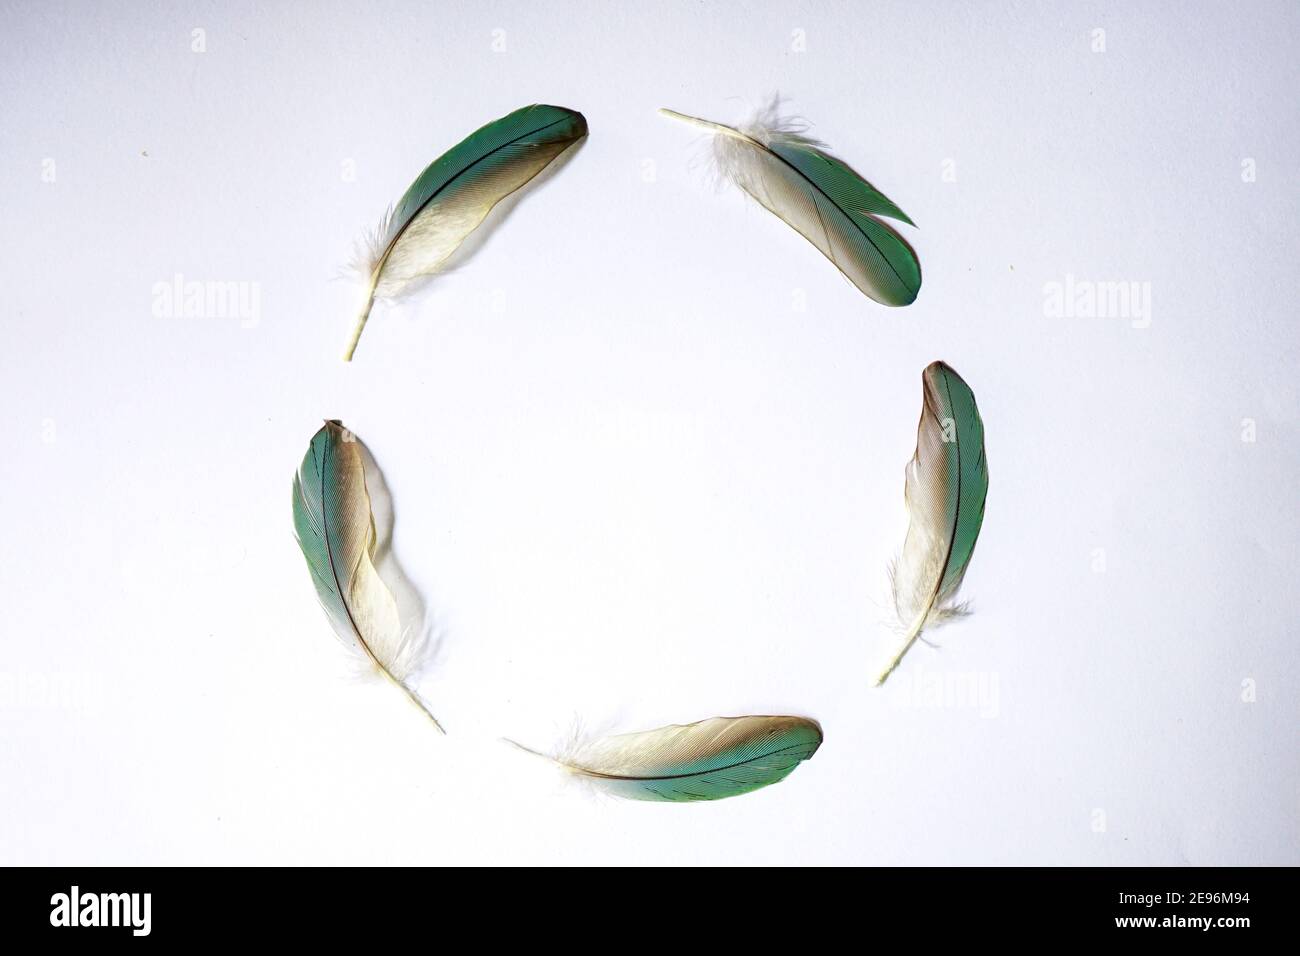 Le cinque piume delle ali di pappagallo dal colore verdeggiante formano una forma circolare. Su uno sfondo bianco, utilizzate la fotografia in primo piano Foto Stock